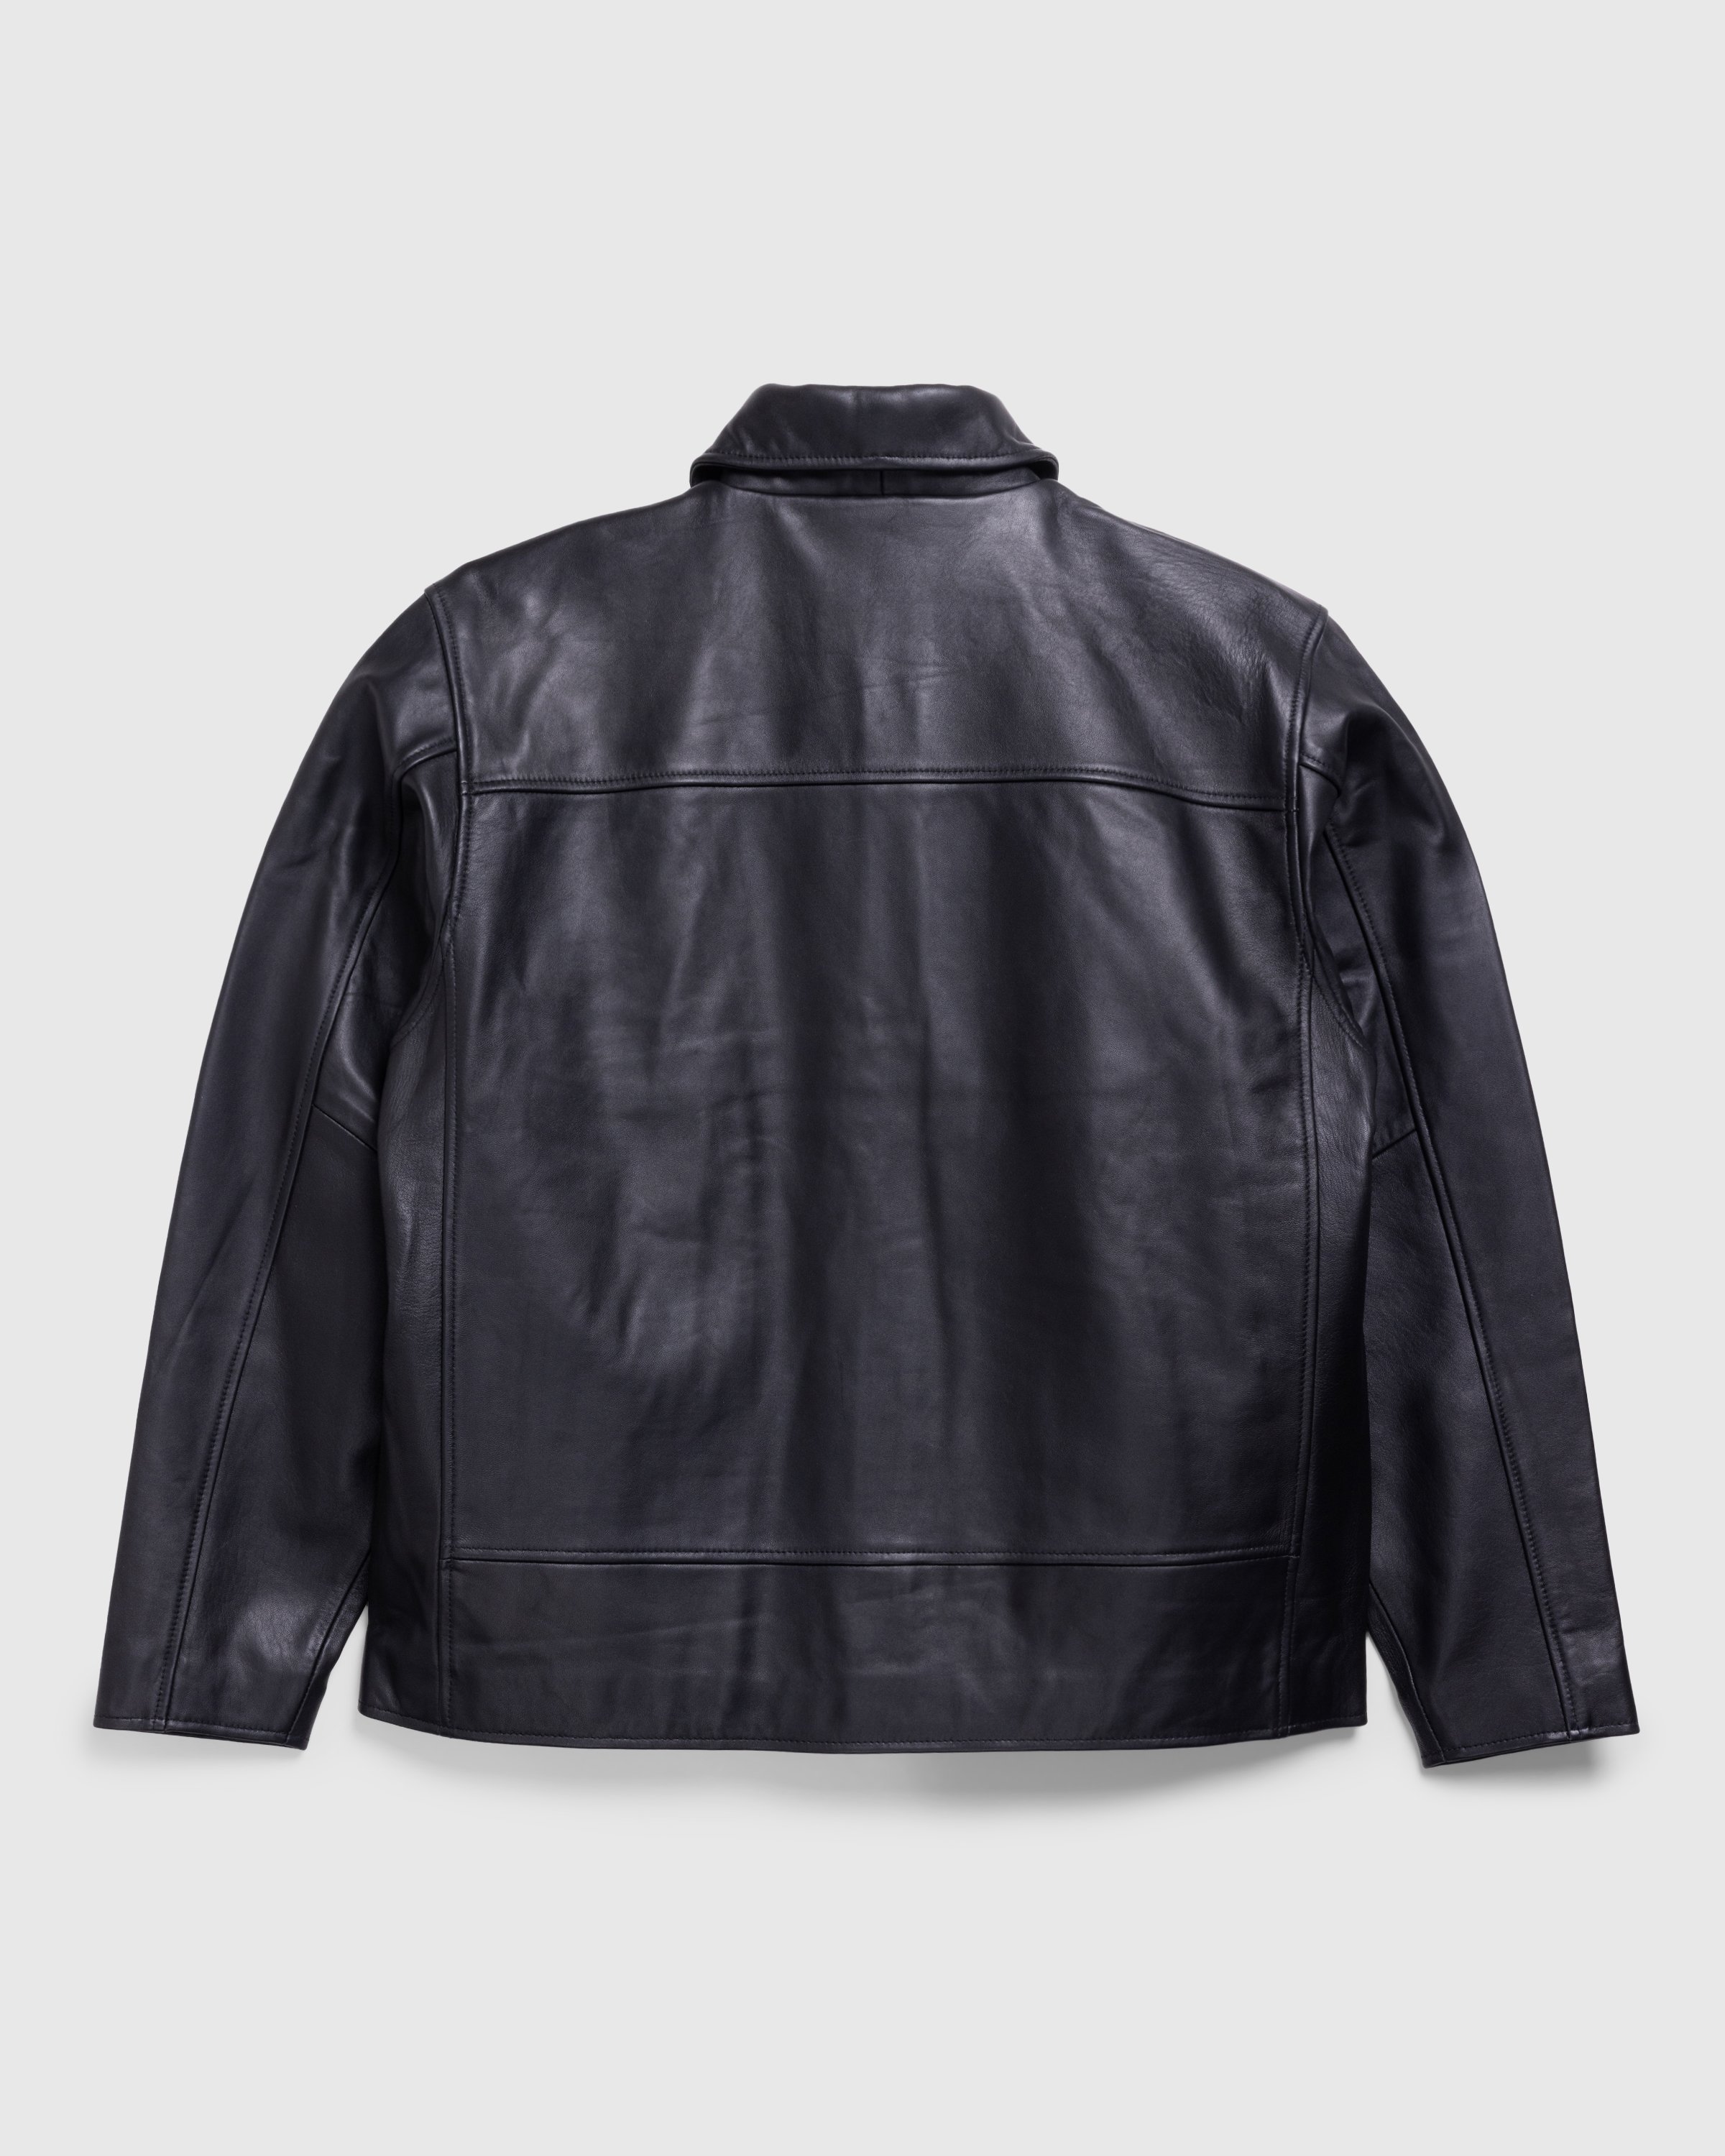 Highsnobiety HS05 - Leather Jacket Black - Clothing - Black - Image 2